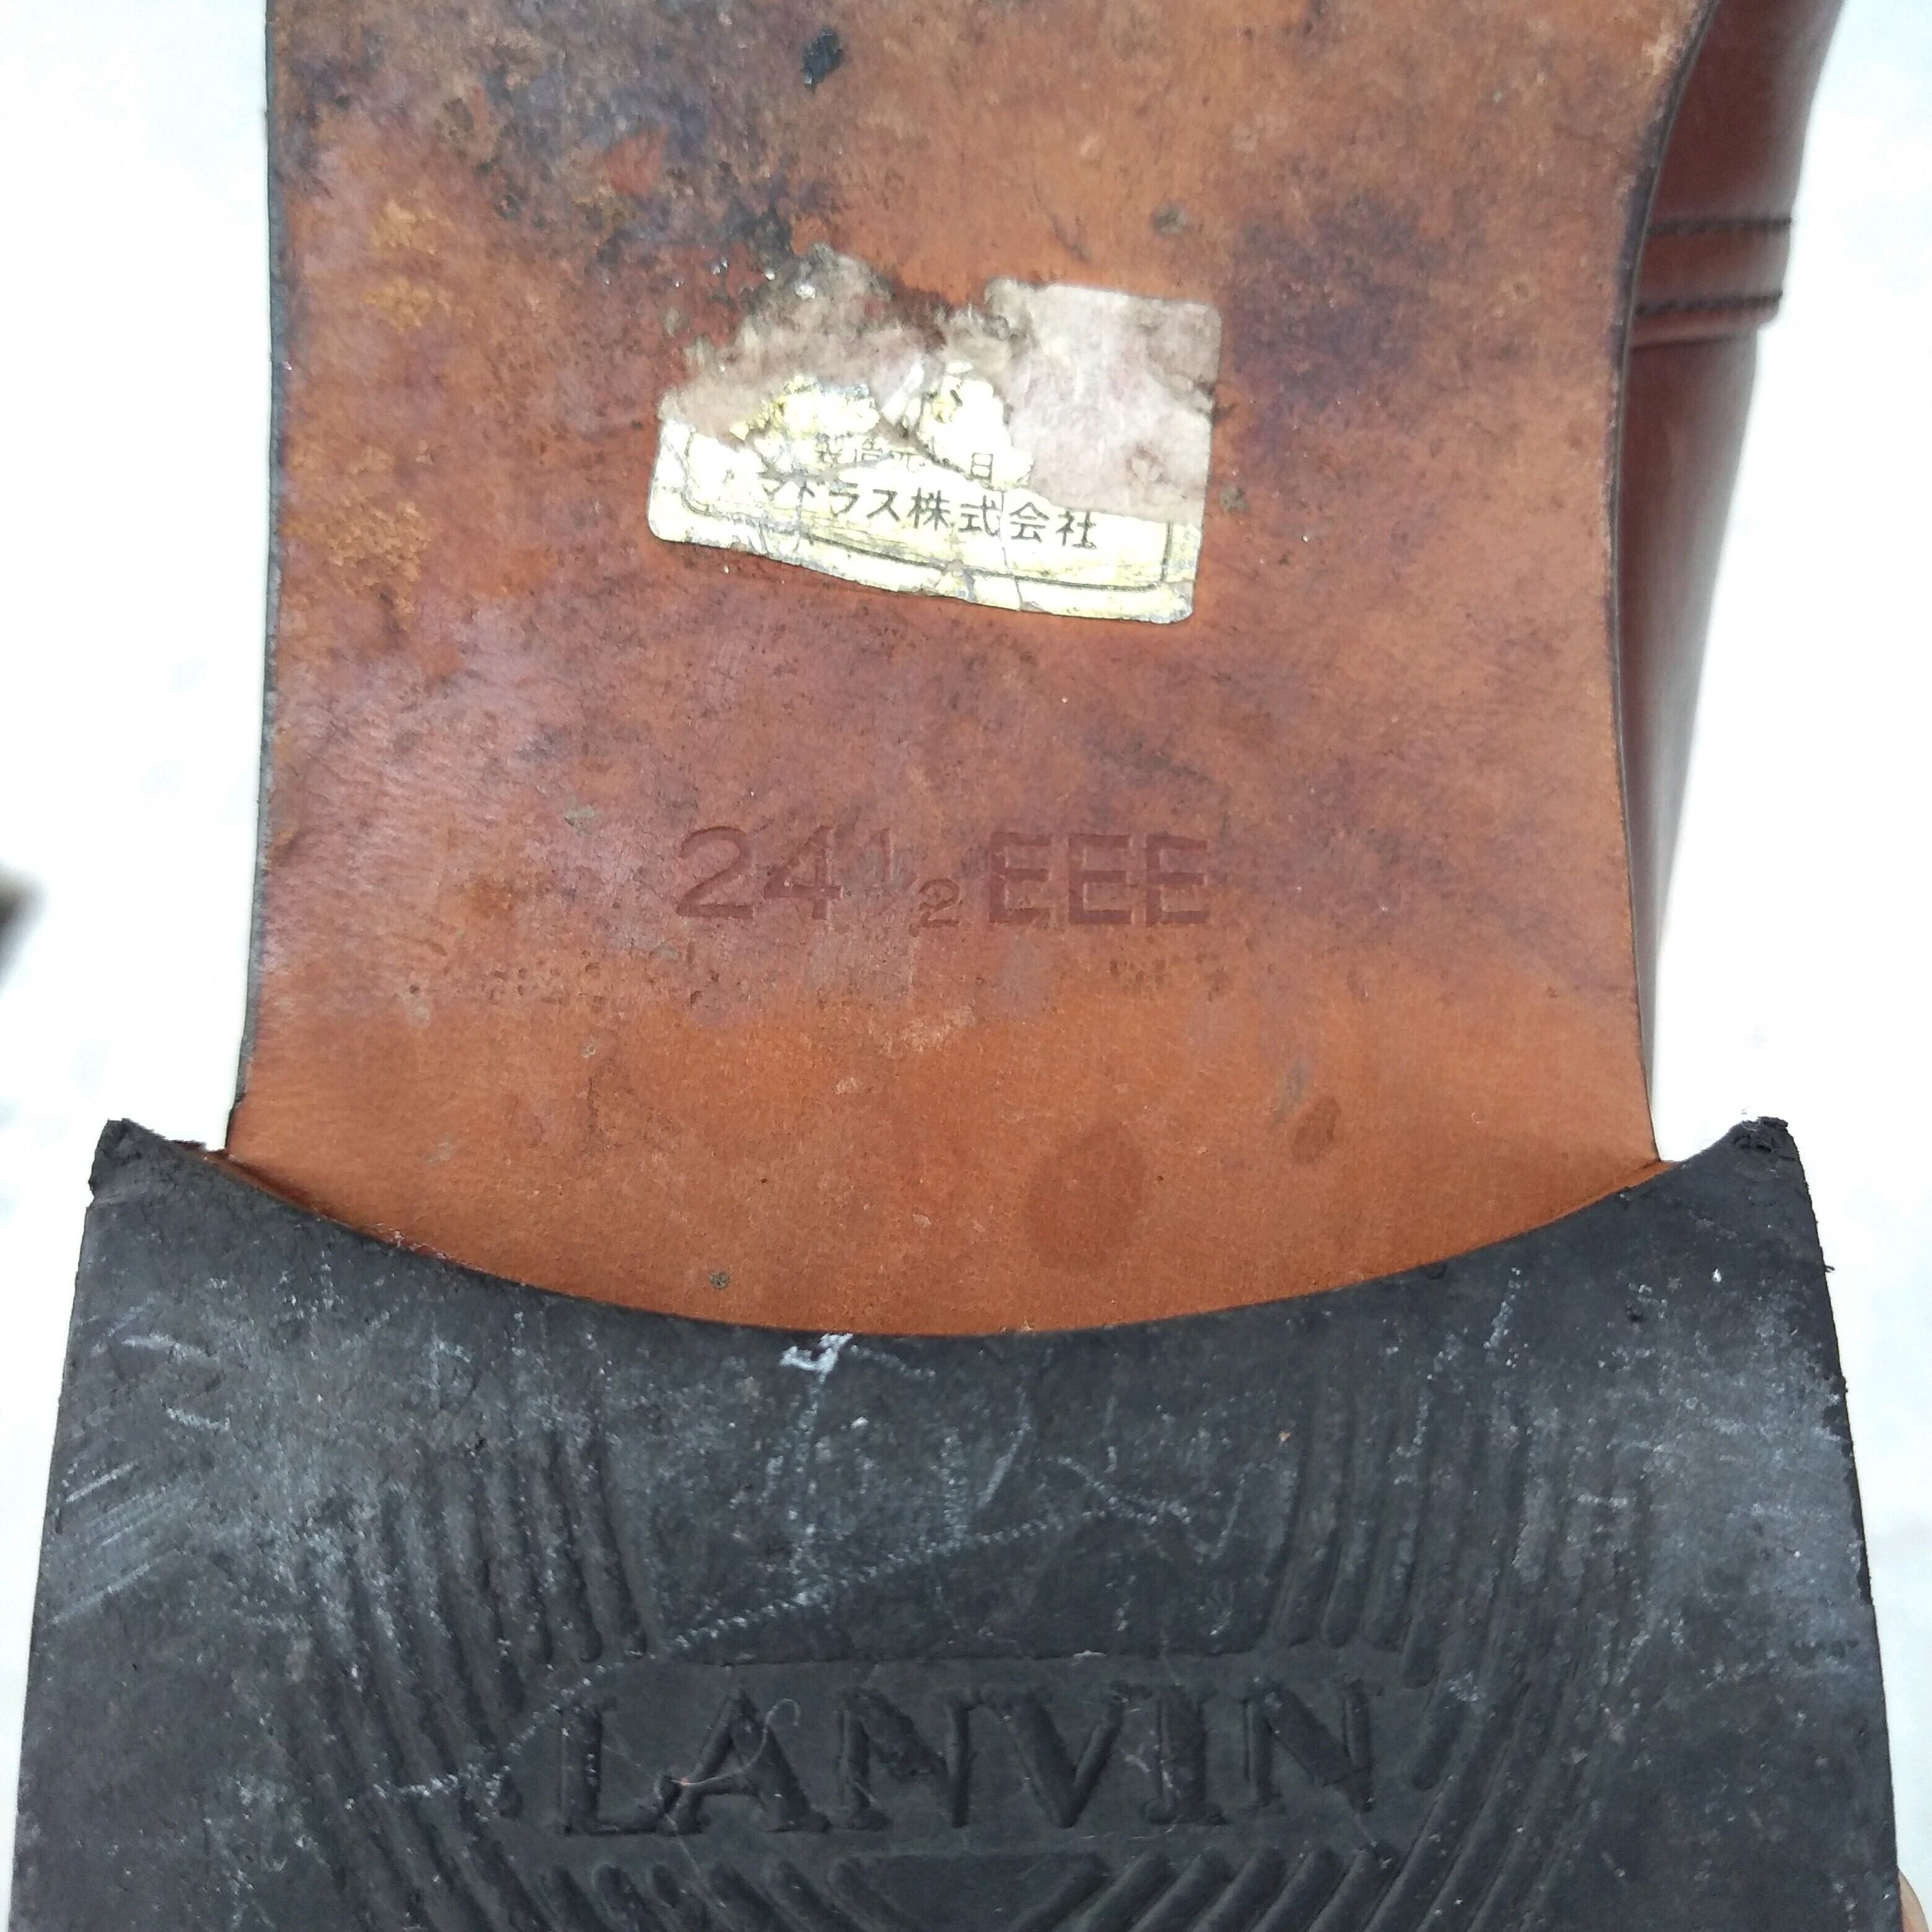 - LANVIN スラックス ランバン ヴィンテージ vintage アーカイブ